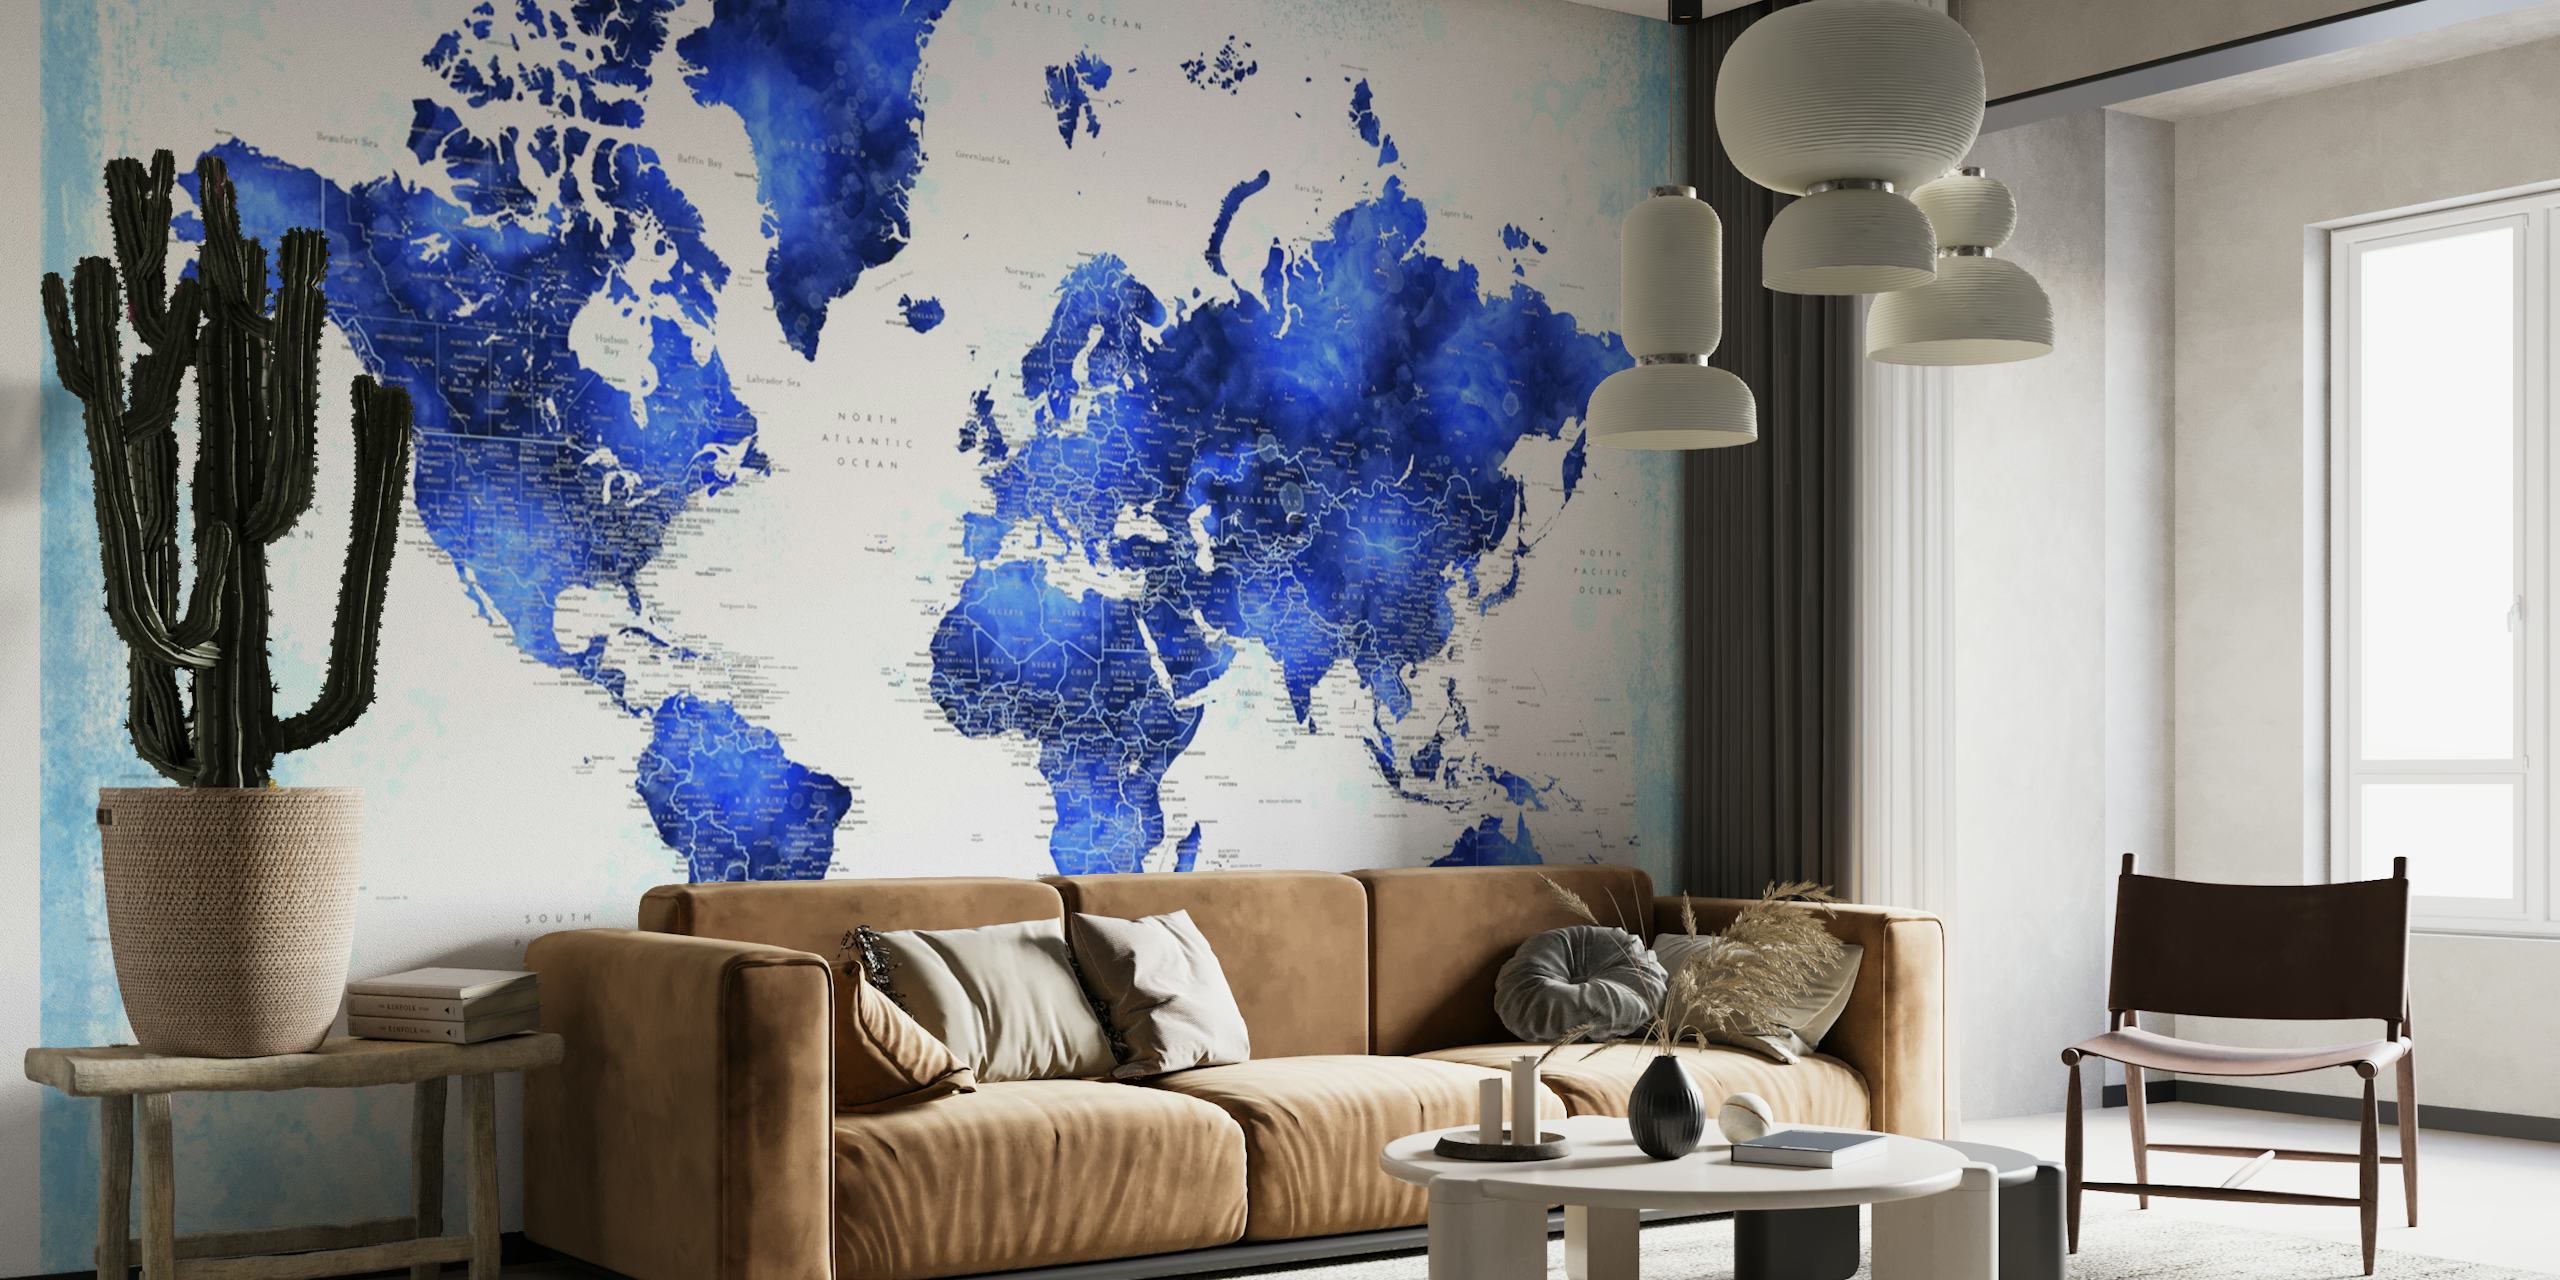 Gedetailleerde wereldkaart Georgino muurschildering in blauwe tinten